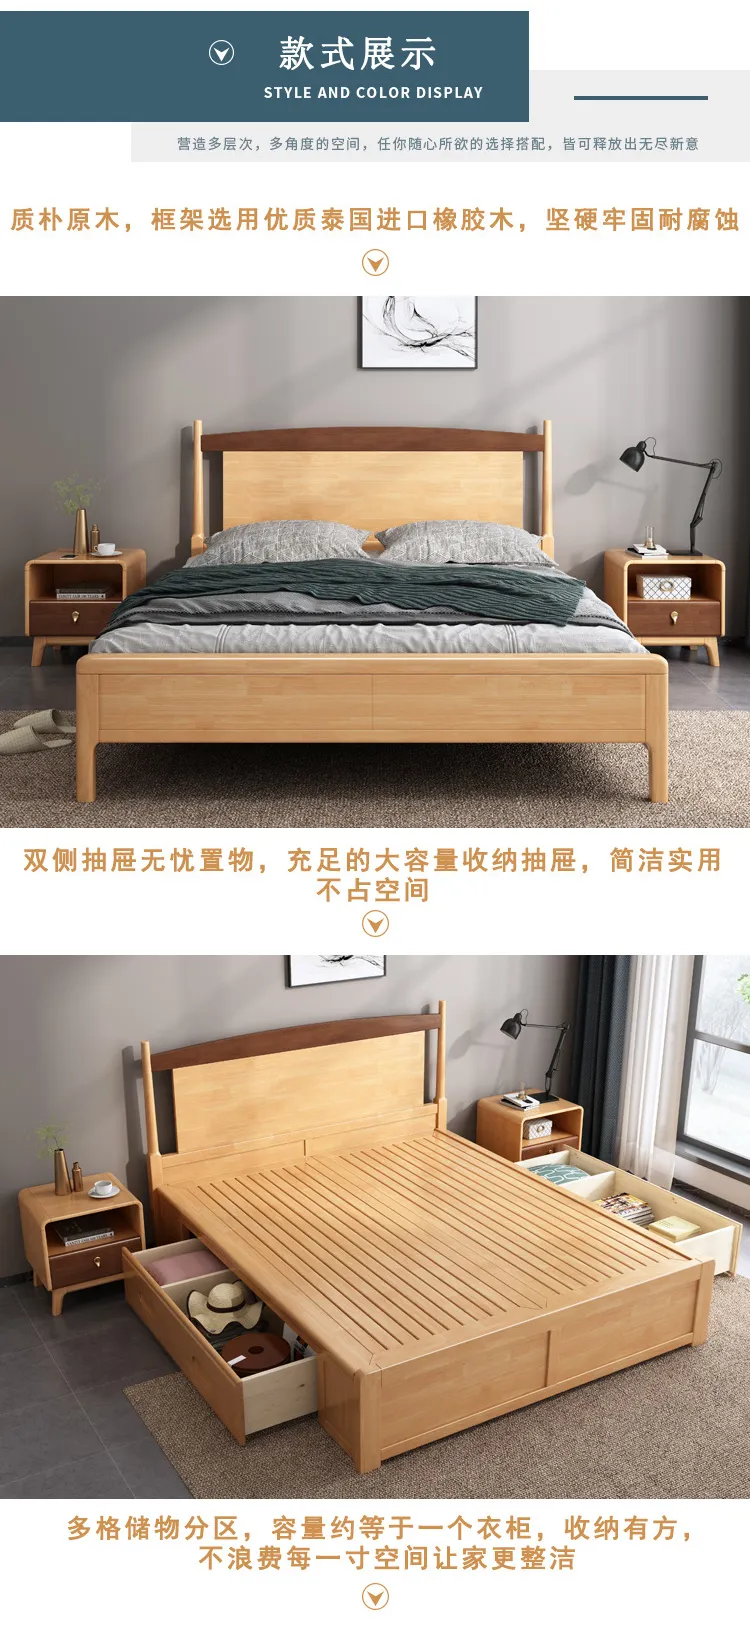 华松居 北欧实木床现代简约家用双人床经济型床 DM-607-K床(图3)